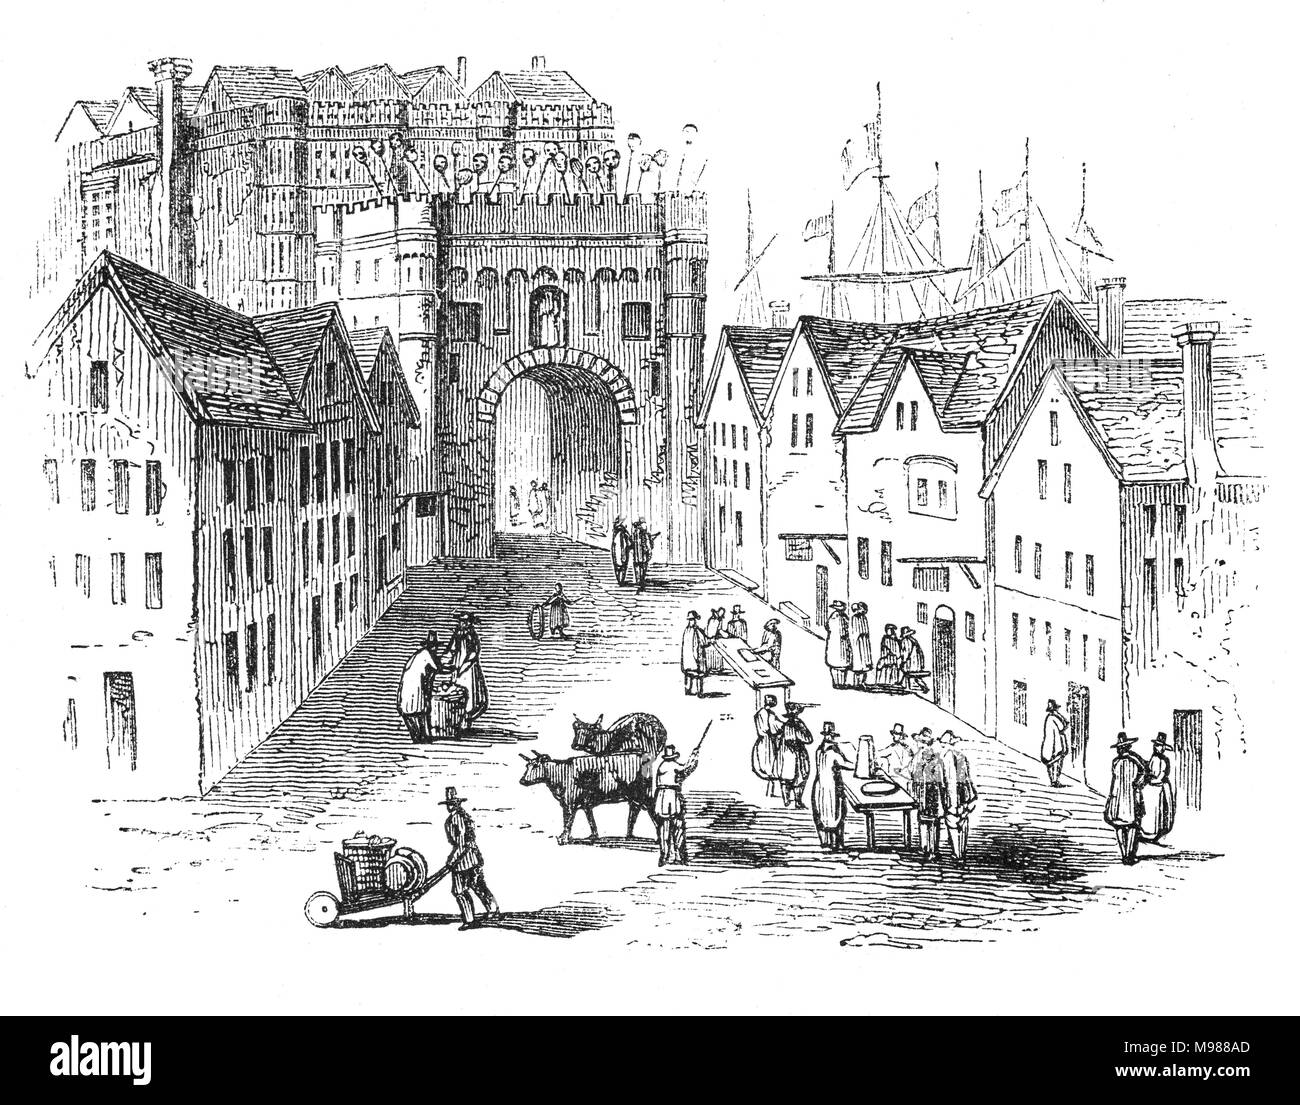 La entrada almenada a la "vieja" el Puente de Londres (1209-1831) sobre el Río Támesis en el lado de Southwark. El rey Enrique II encargó un nuevo puente de piedra en el lugar de la antigua, con una capilla en su centro dedicado a Becket como mártir. Su construcción comenzó en 1176 y se terminó en 1209 durante el reinado del Rey Juan; le tomó 33 años para completar. Ciudad de Londres, Inglaterra Foto de stock